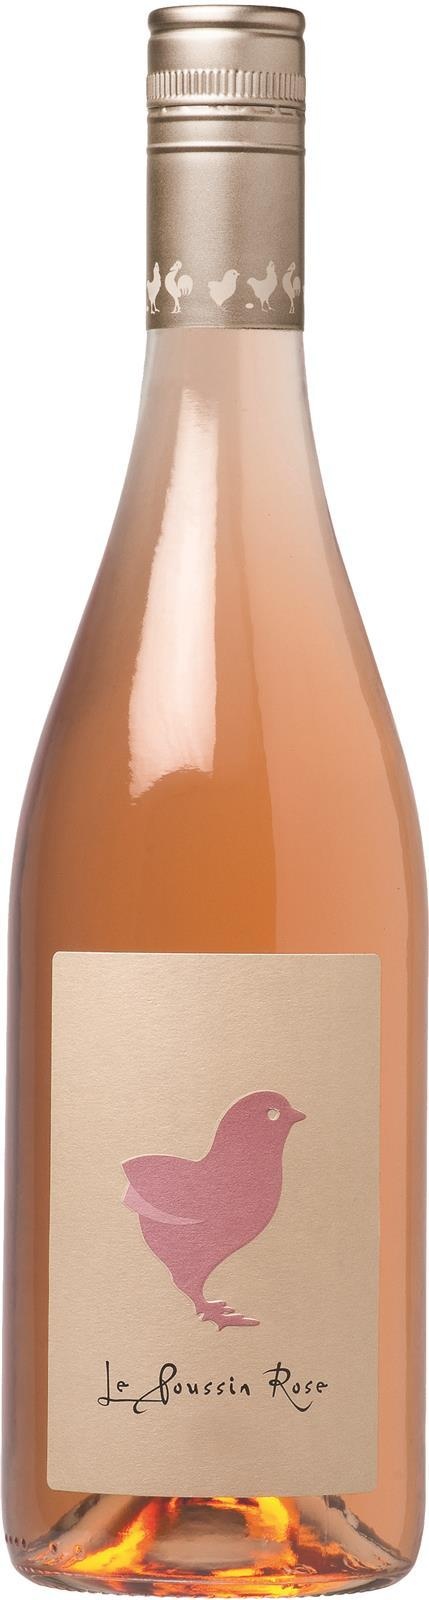 Розовое сухое вино купить. Саша Лишин вино. Вино розовое сухое. Вино Ле Классик де Вантенак Розе розовое сухое. Французское розовое вино сухое.